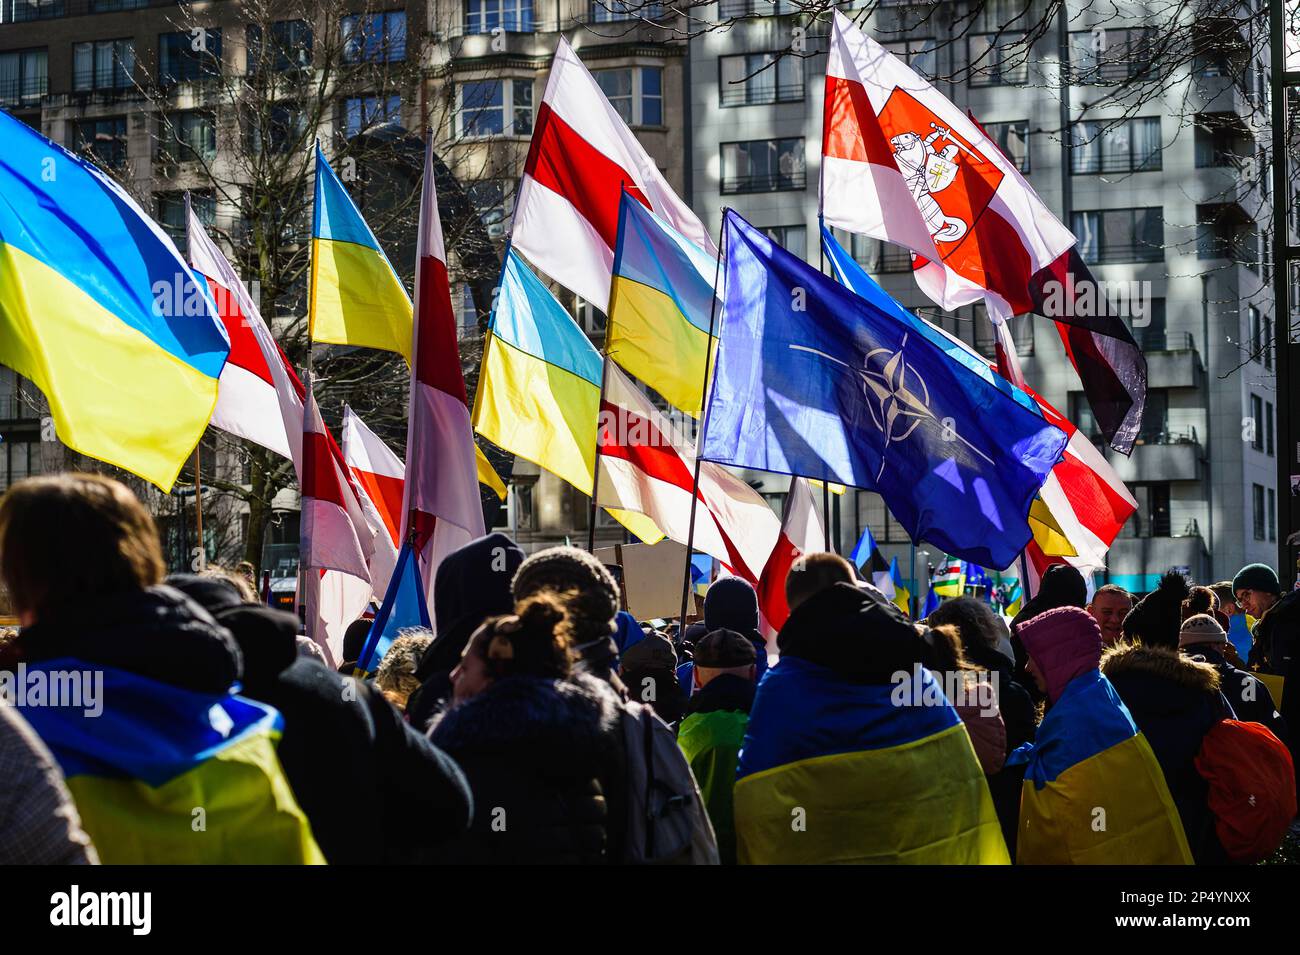 Manifestazione contro Putin e la guerra in ucraina a Bruxelles - bandiere della NATO | manifestazione contre Poutine et la guerre en Ukraine Drapeau Otan Foto Stock